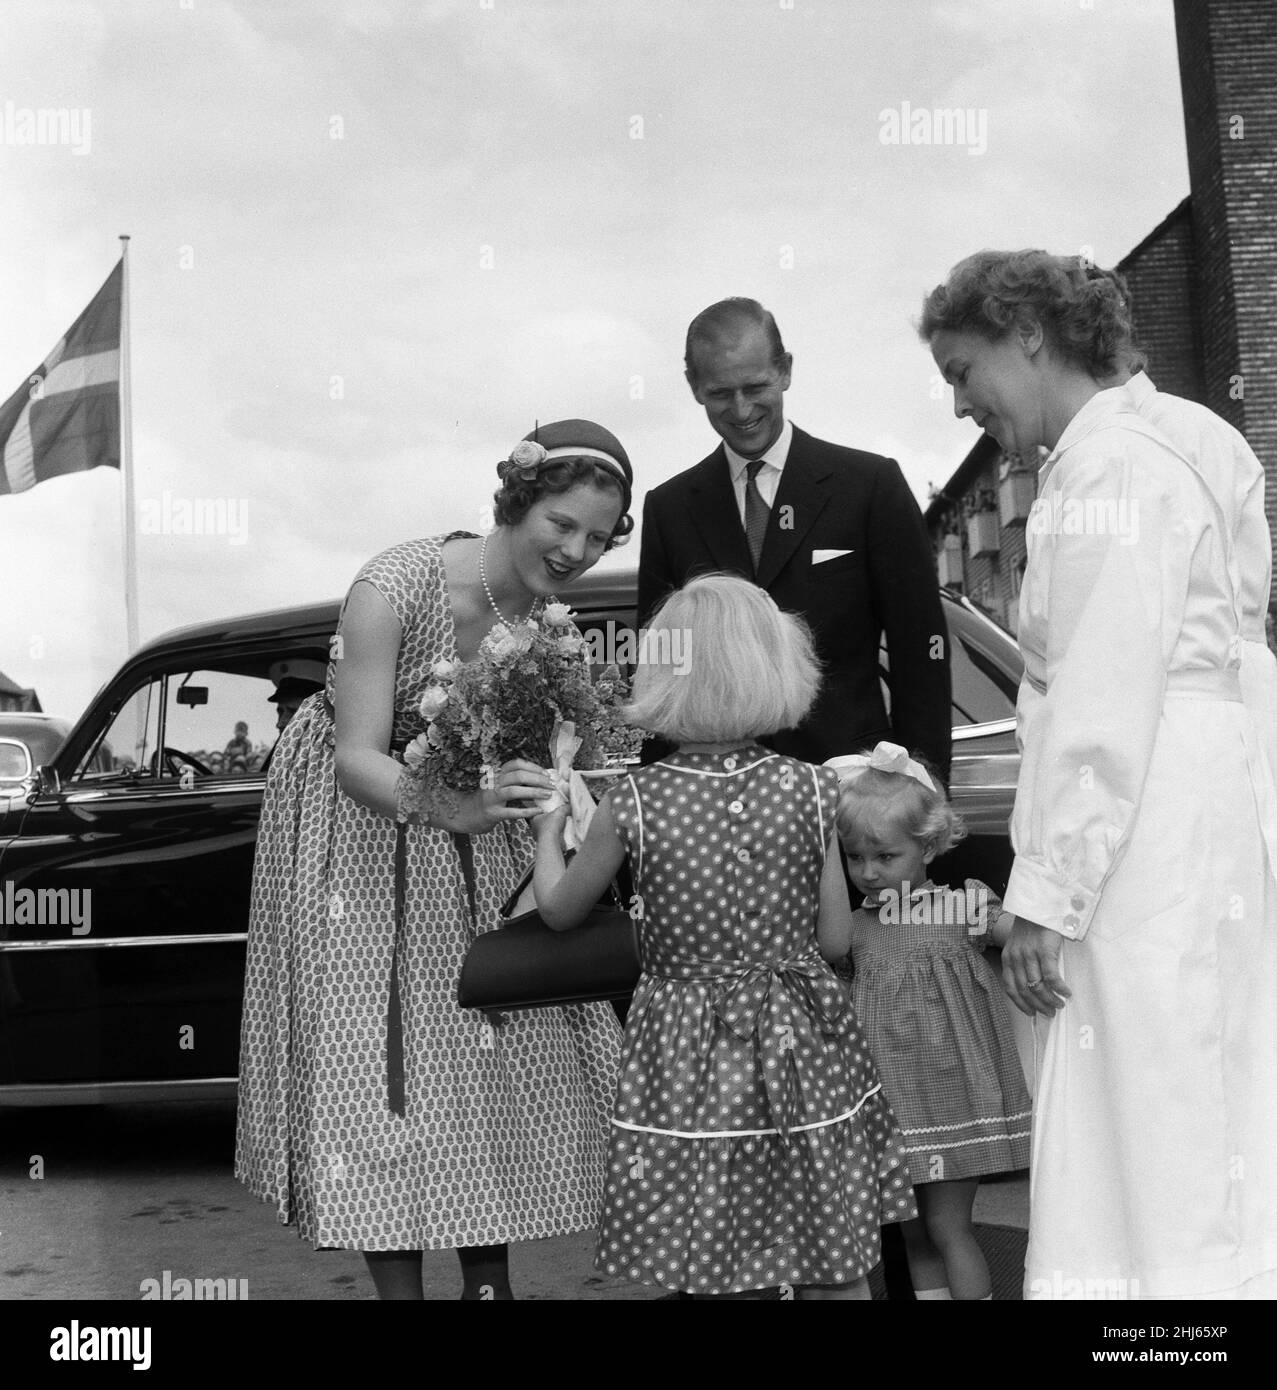 Königin Elizabeth II. Und Prinz Philip, Herzog von Edinburgh, besuchen Dänemark. Prinzessin Margrethe (zukünftige Königin von Dänemark) mit Prinz Philip erhielt einen Blumenstrauß von einem Kind, als die königliche Partei das städtische Erholungszentrum von Kopenhagen besuchte. 22nd Mai 1957. Stockfoto